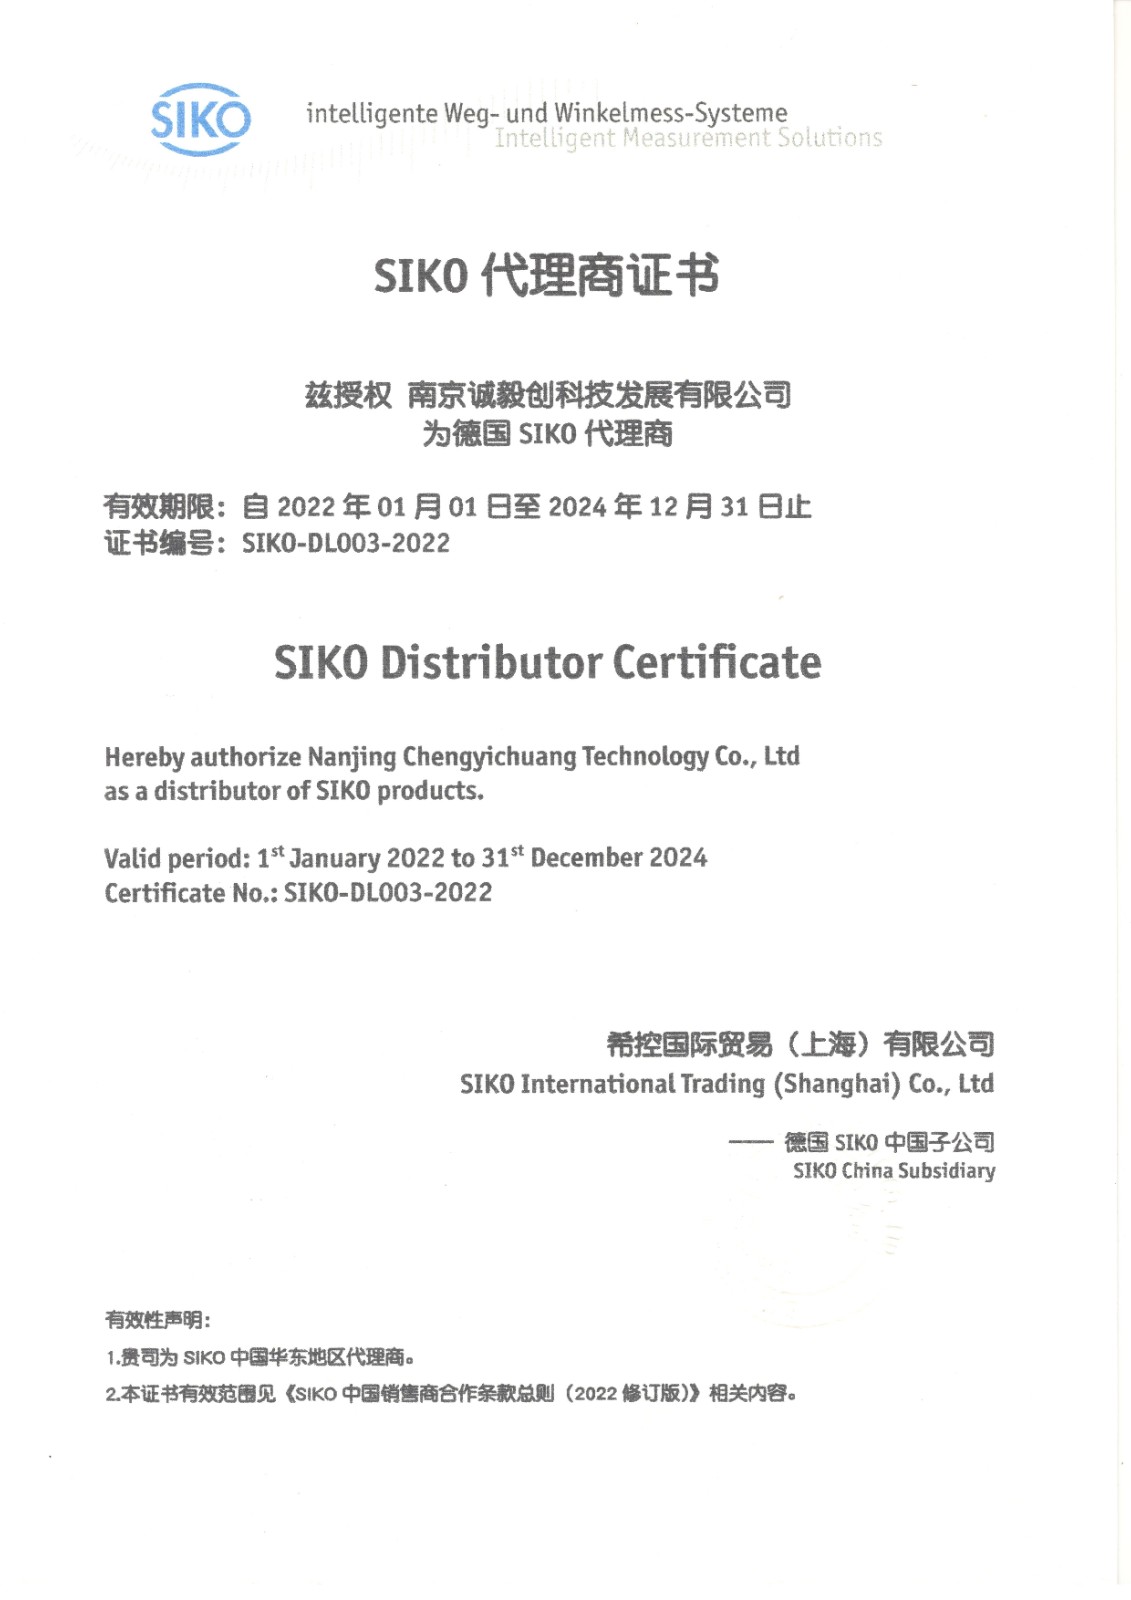 SIKO 2022-2024年代理证书